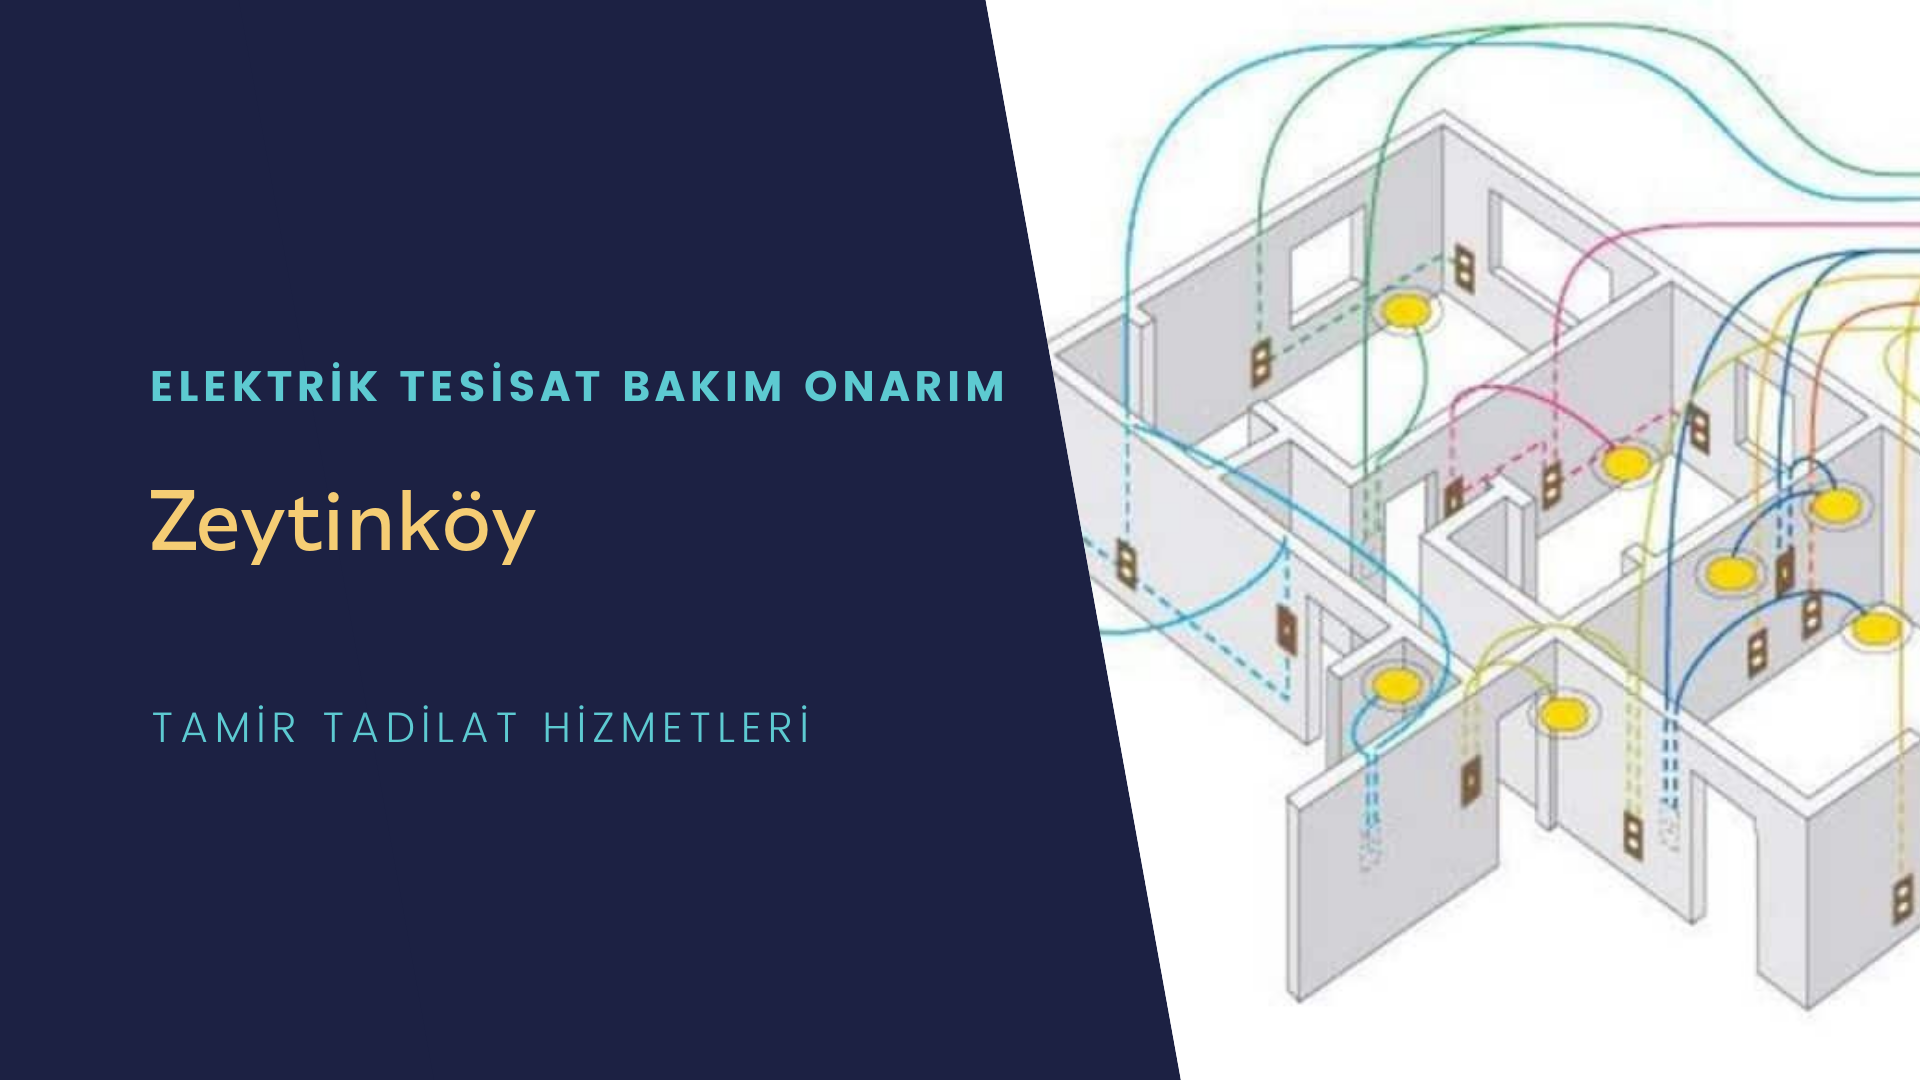 Zeytinköy'de elektrik tesisatı ustalarımı arıyorsunuz doğru adrestenizi Zeytinköy elektrik tesisatı ustalarımız 7/24 sizlere hizmet vermekten mutluluk duyar.